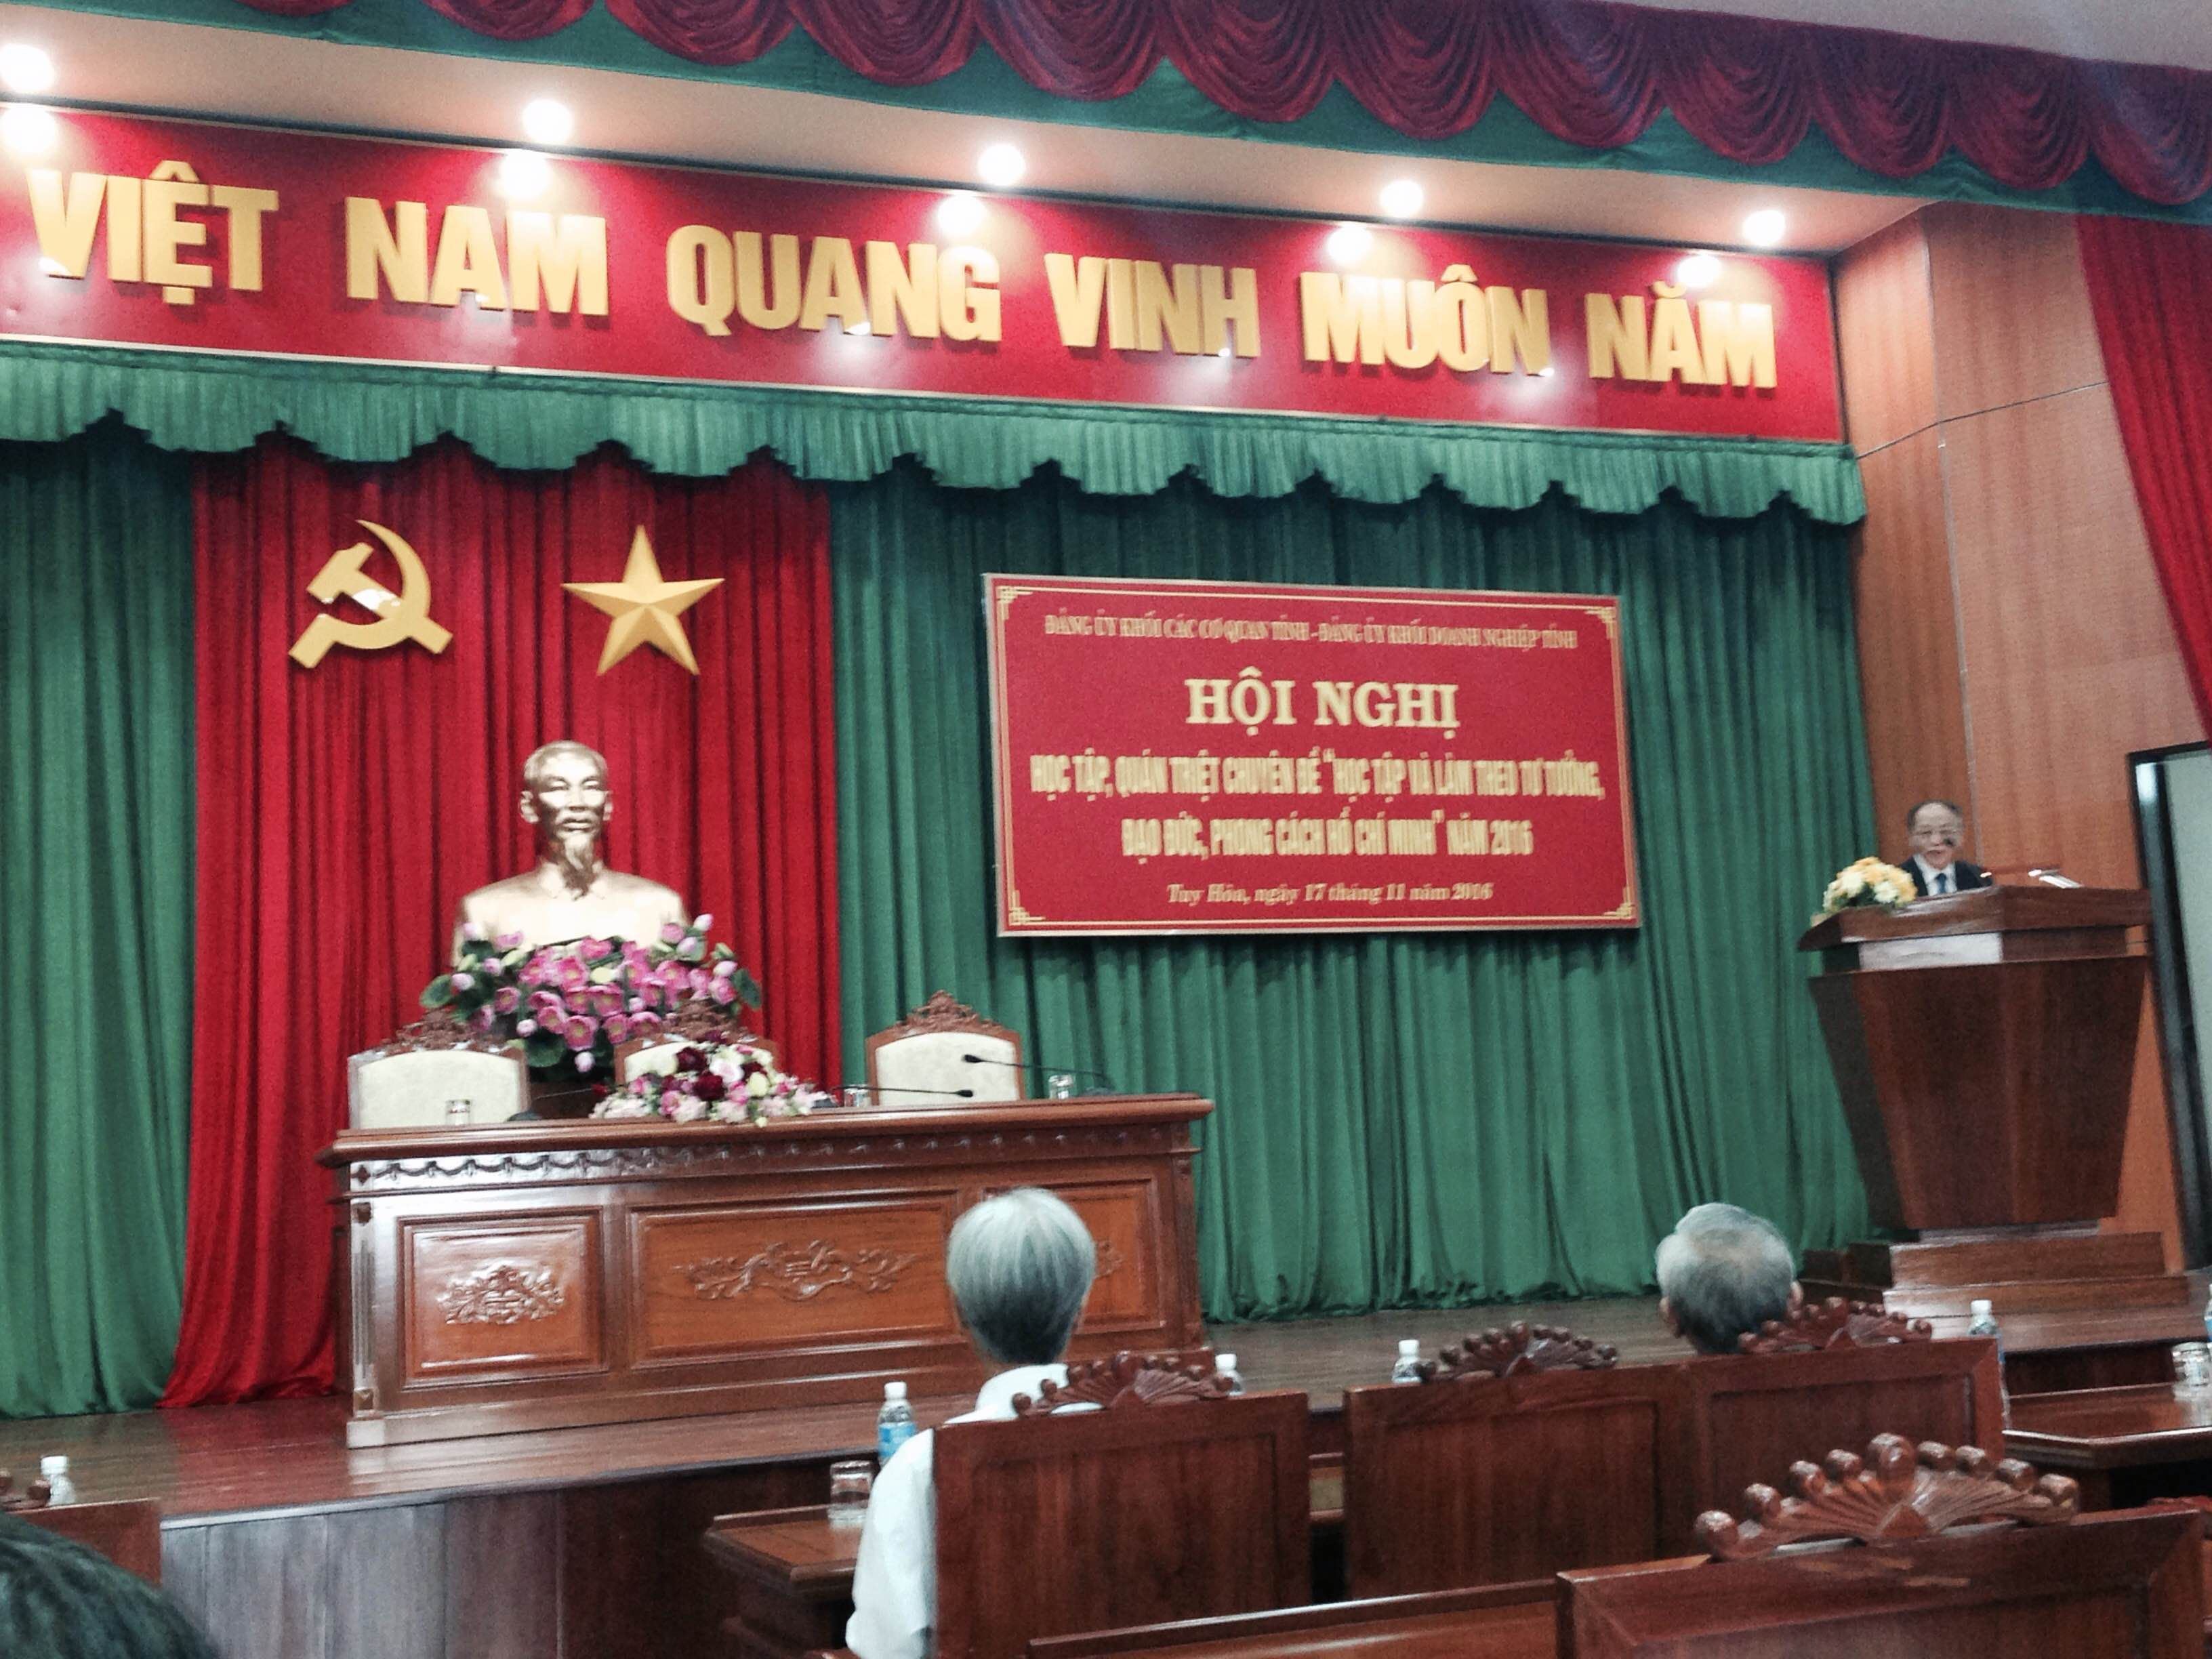           Đảng ủy Công ty CP Cấp thoát nước Phú Yên tham dự Hội nghị học tập, quán triệt chuyên đề ”Học tập và làm theo tư tưởng, đạo đức, phong cách tấm gương đạo đức Hồ Chí Minh” năm 2016